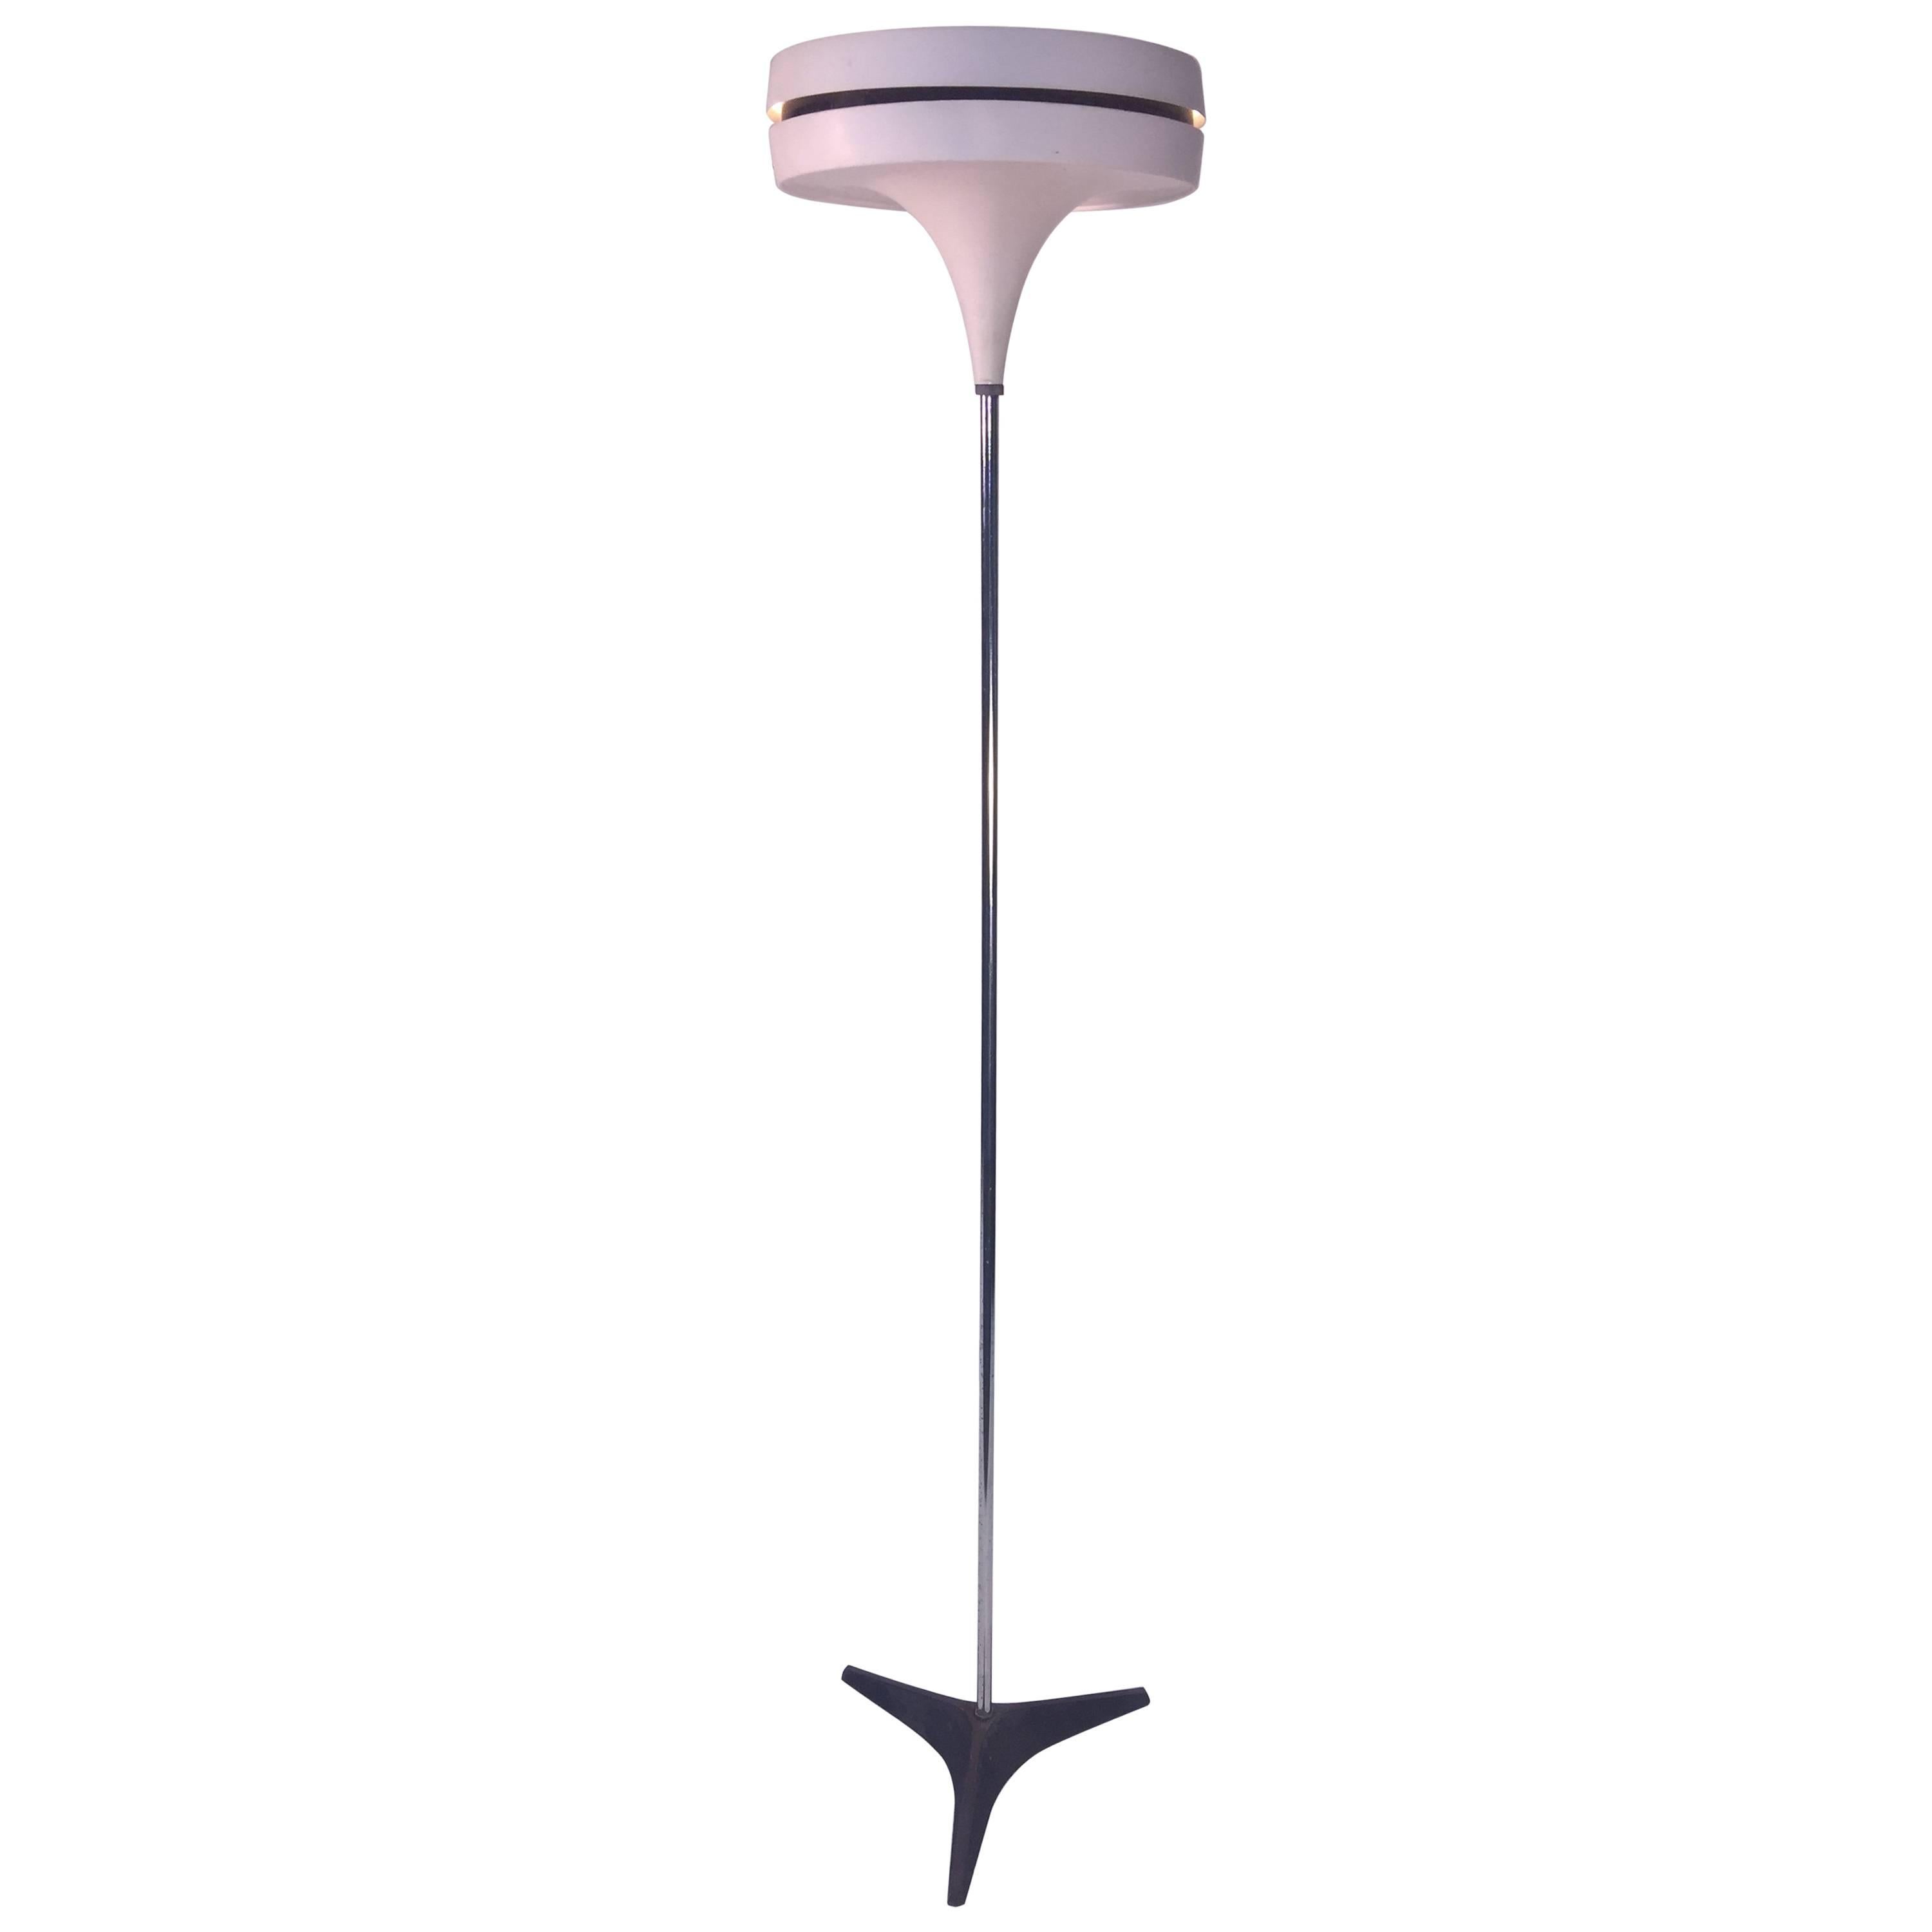 Modern Floor Lamp Designed by RAAK